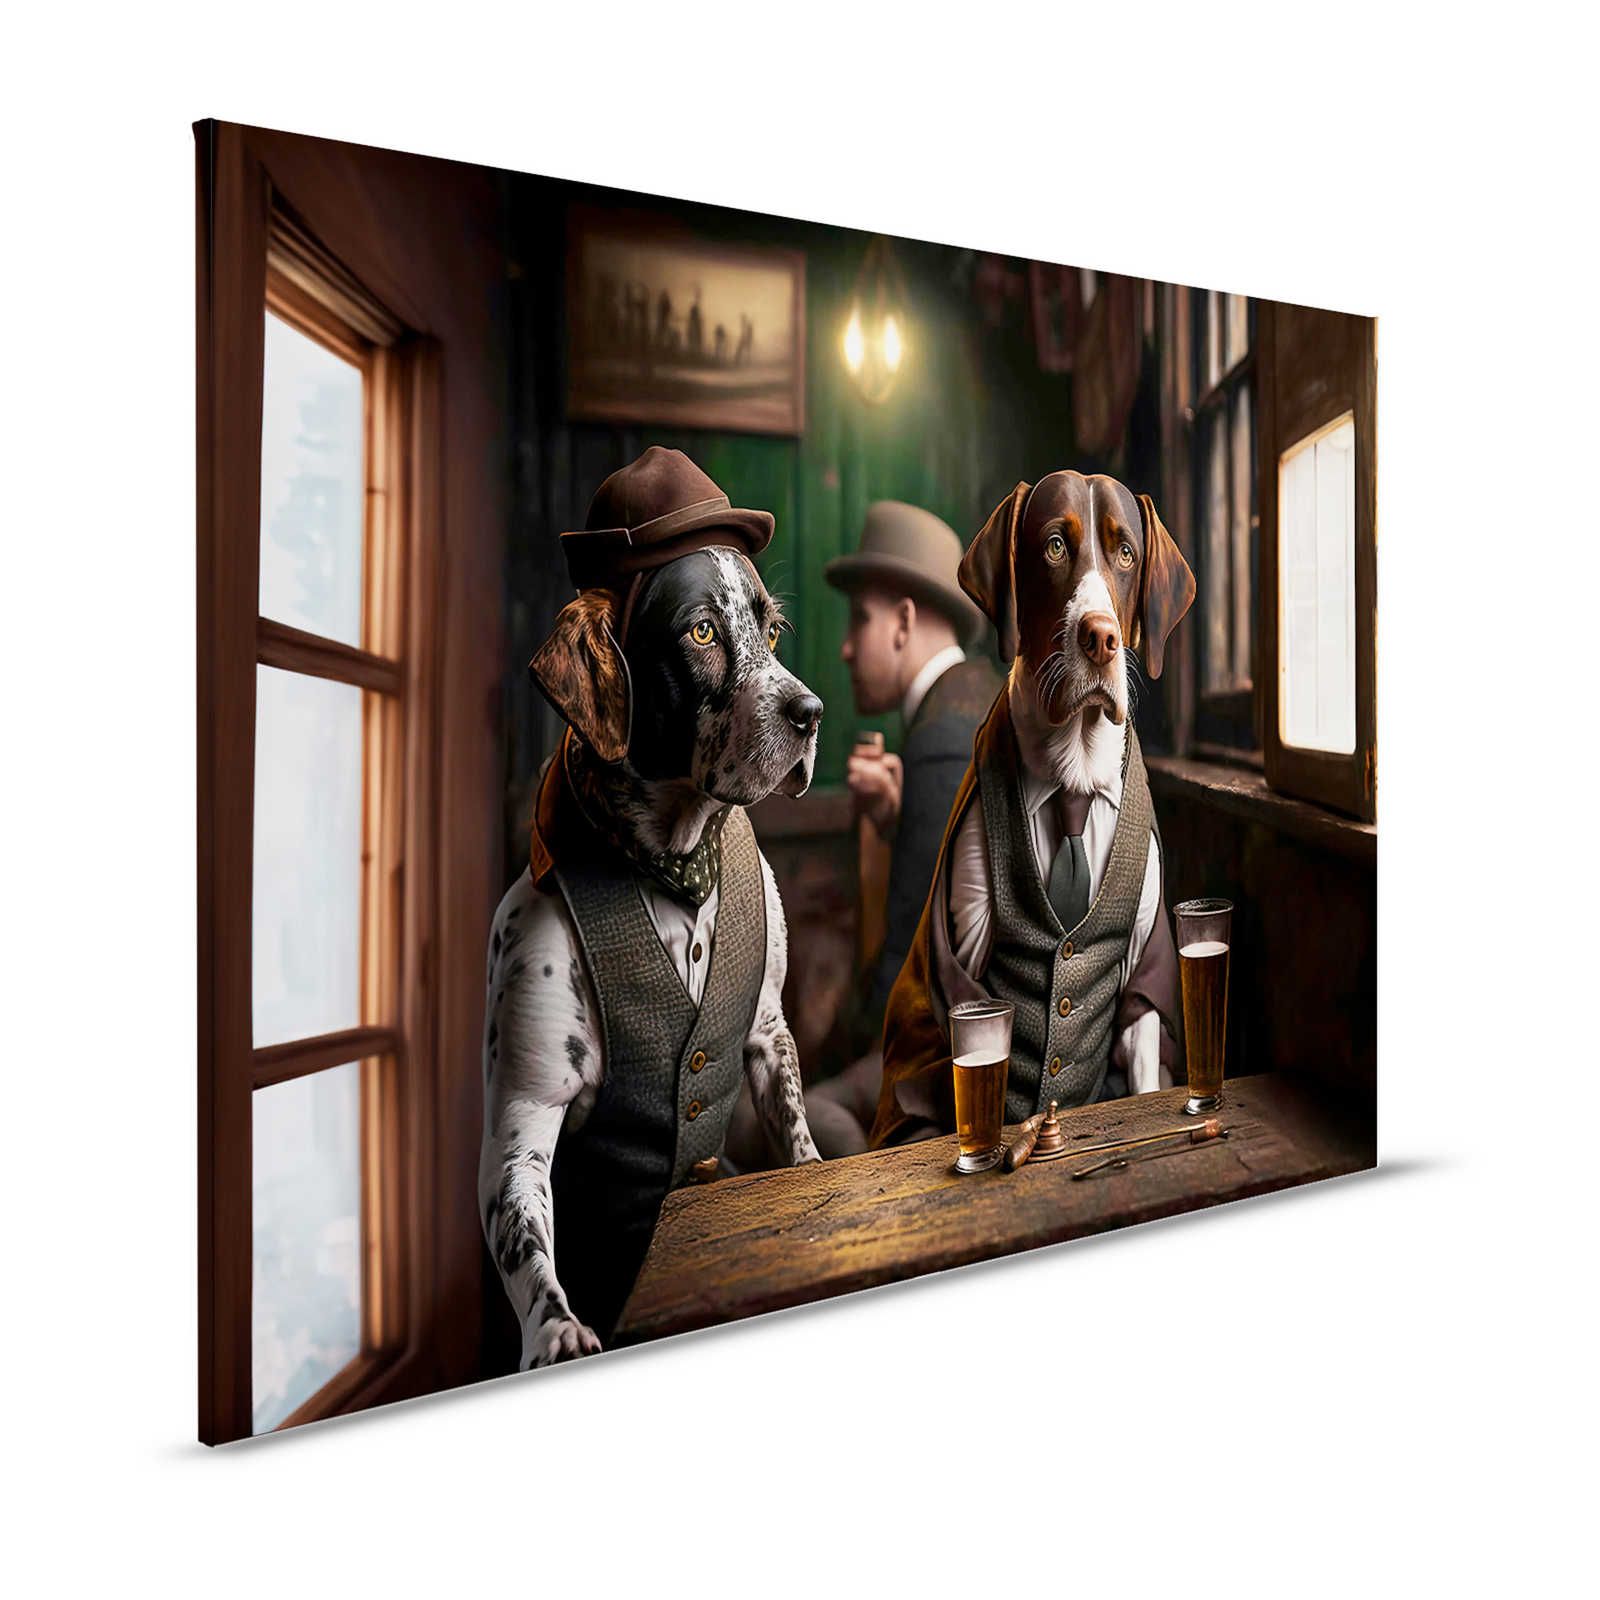 KI Pintura en lienzo »Doggy Bar« - 120 cm x 80 cm
